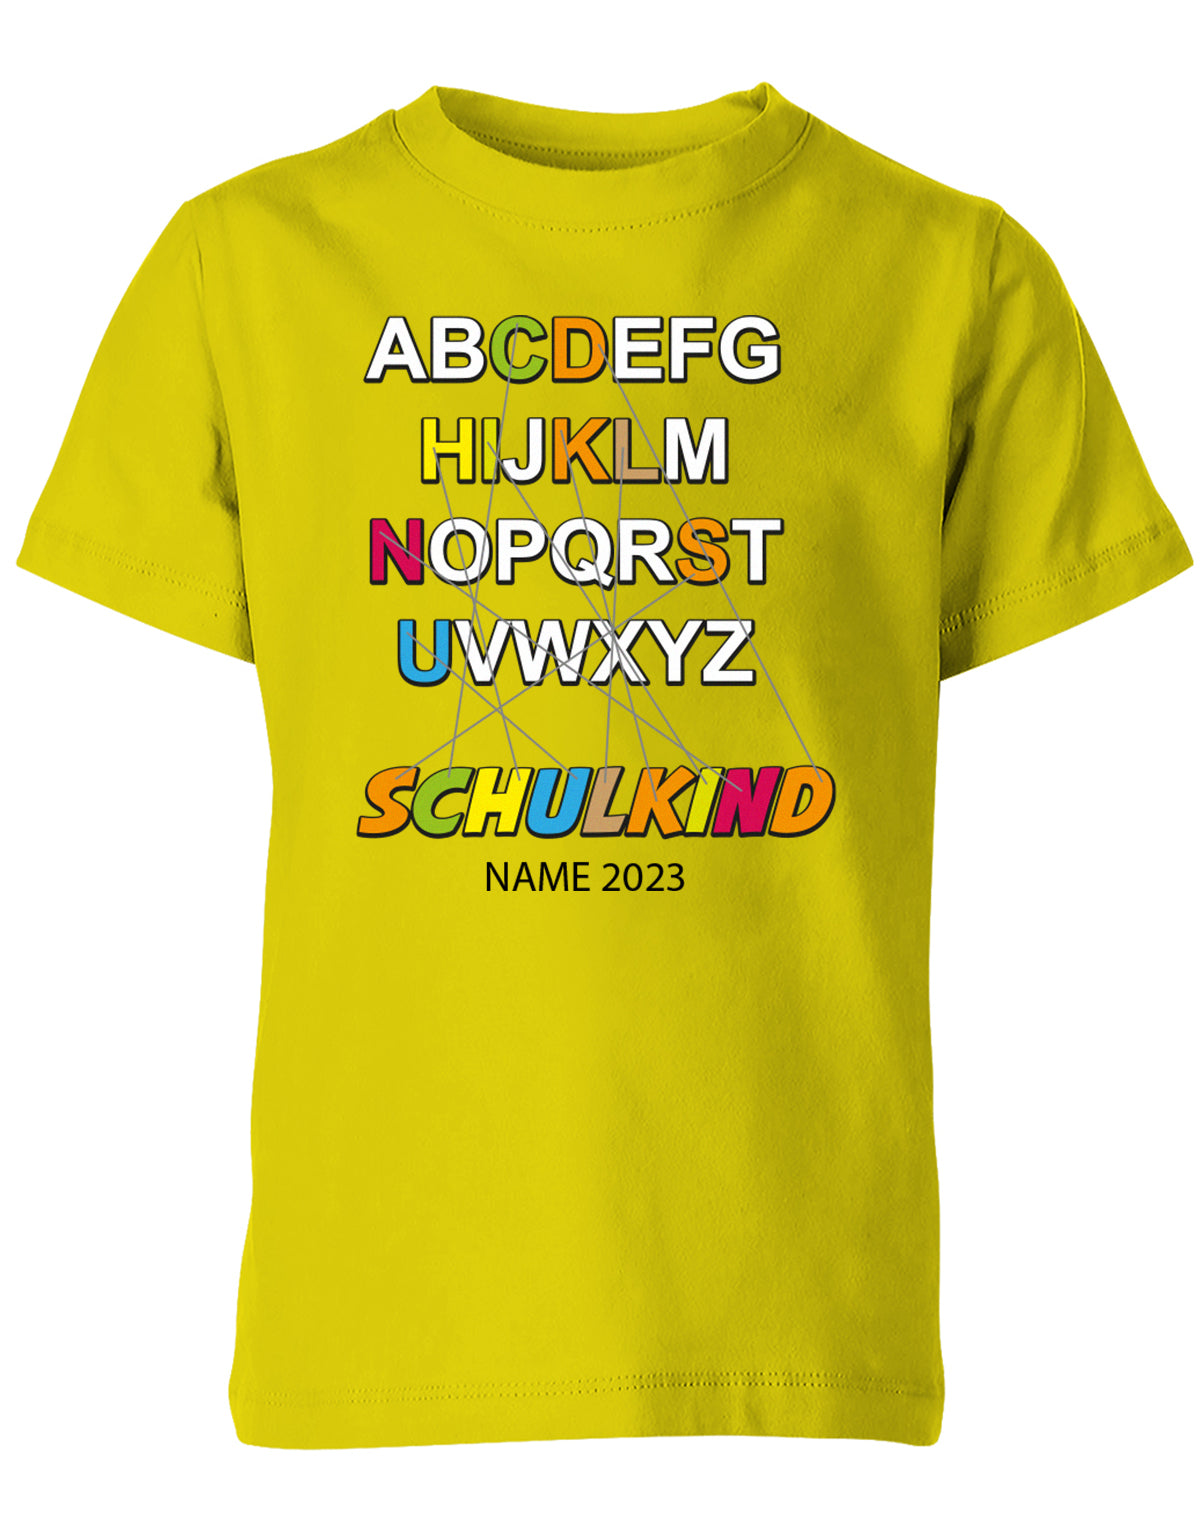 Schulkind Alphabet ABC mit Name - Einschulung T-Shirt Gelb